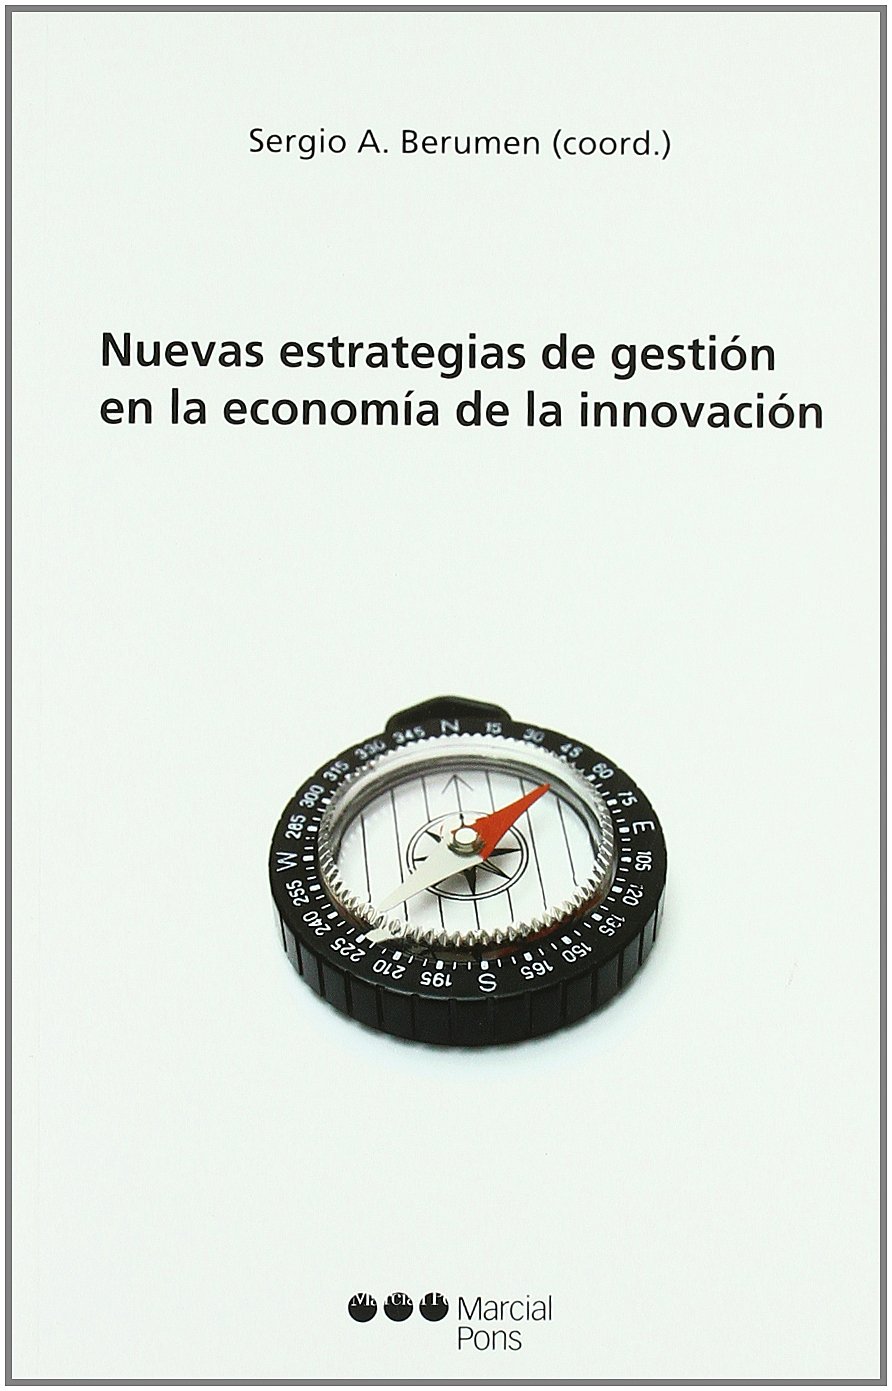 Nuevas estrategias de gestión en la economía de innovación